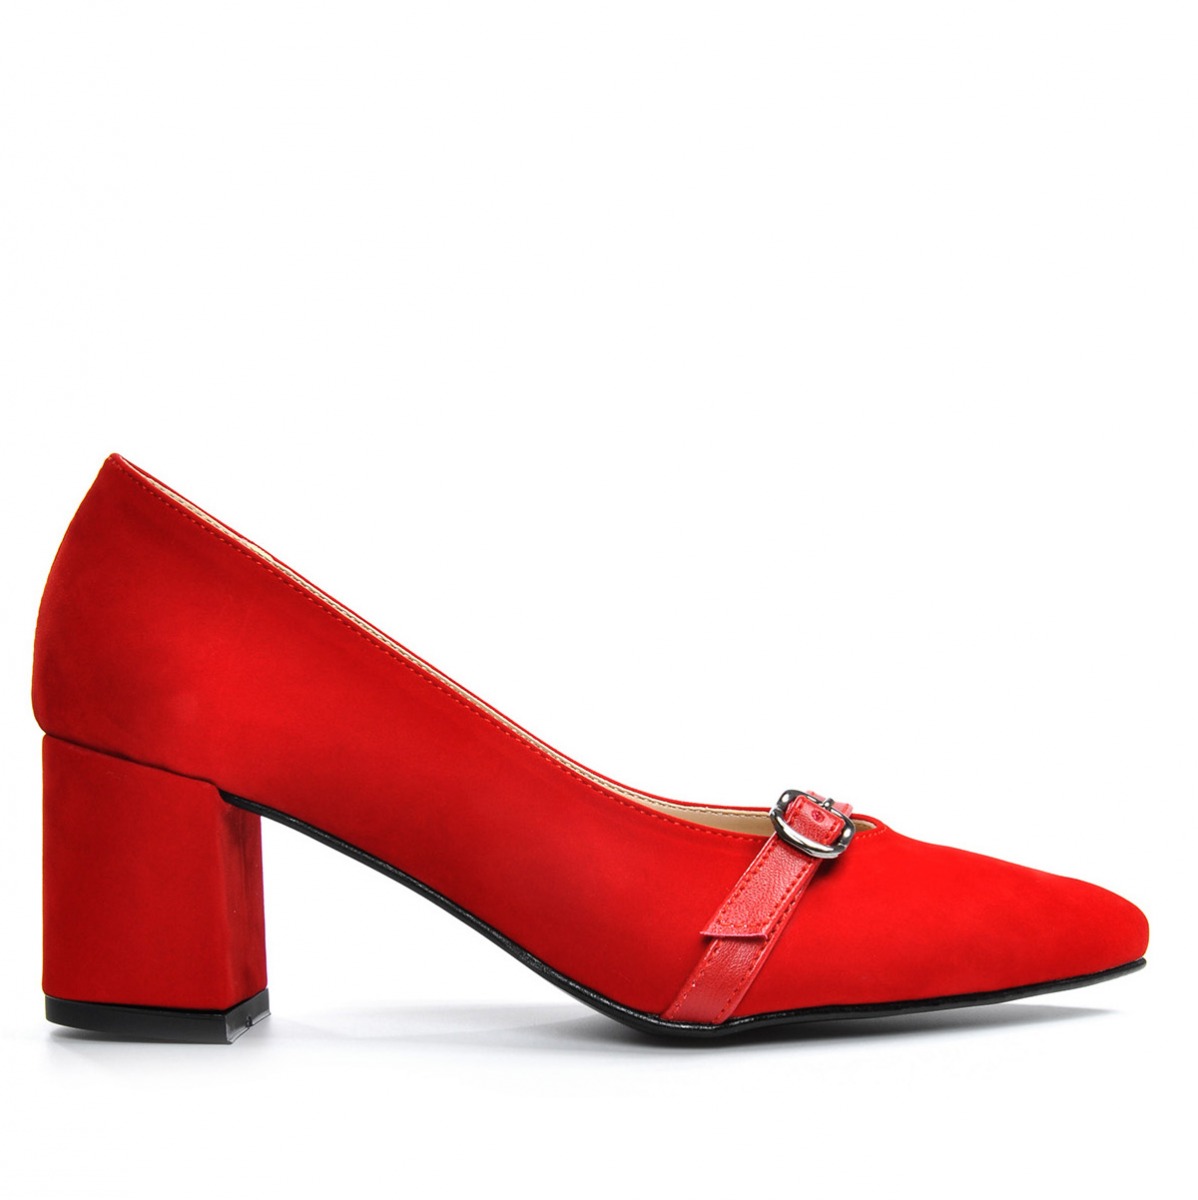 Flo Kadın  Kırmızı-Süet Klasik Topuklu Ayakkabı VZN19-110K. 2